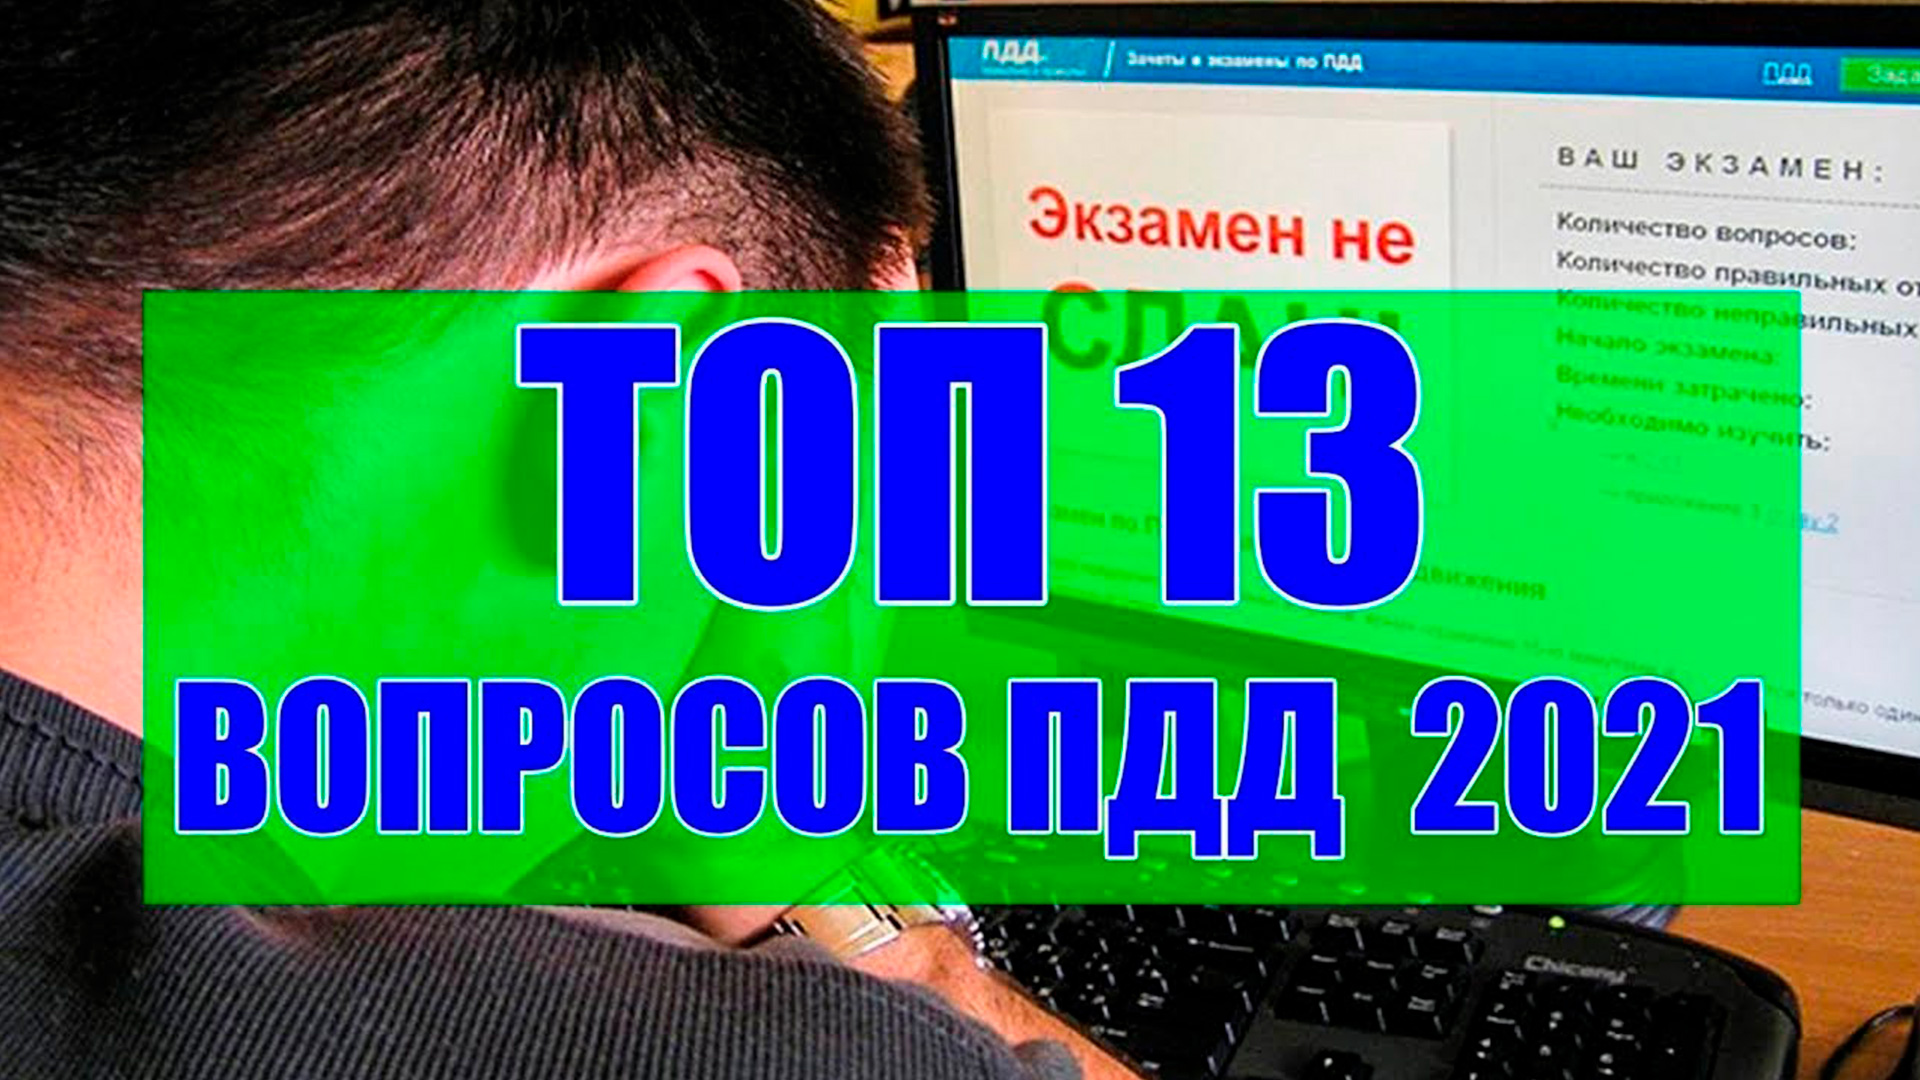 ТОП 13 СЛОЖНЫХ ВОПРОСОВ ПДД 2021 на экзамене.mp4